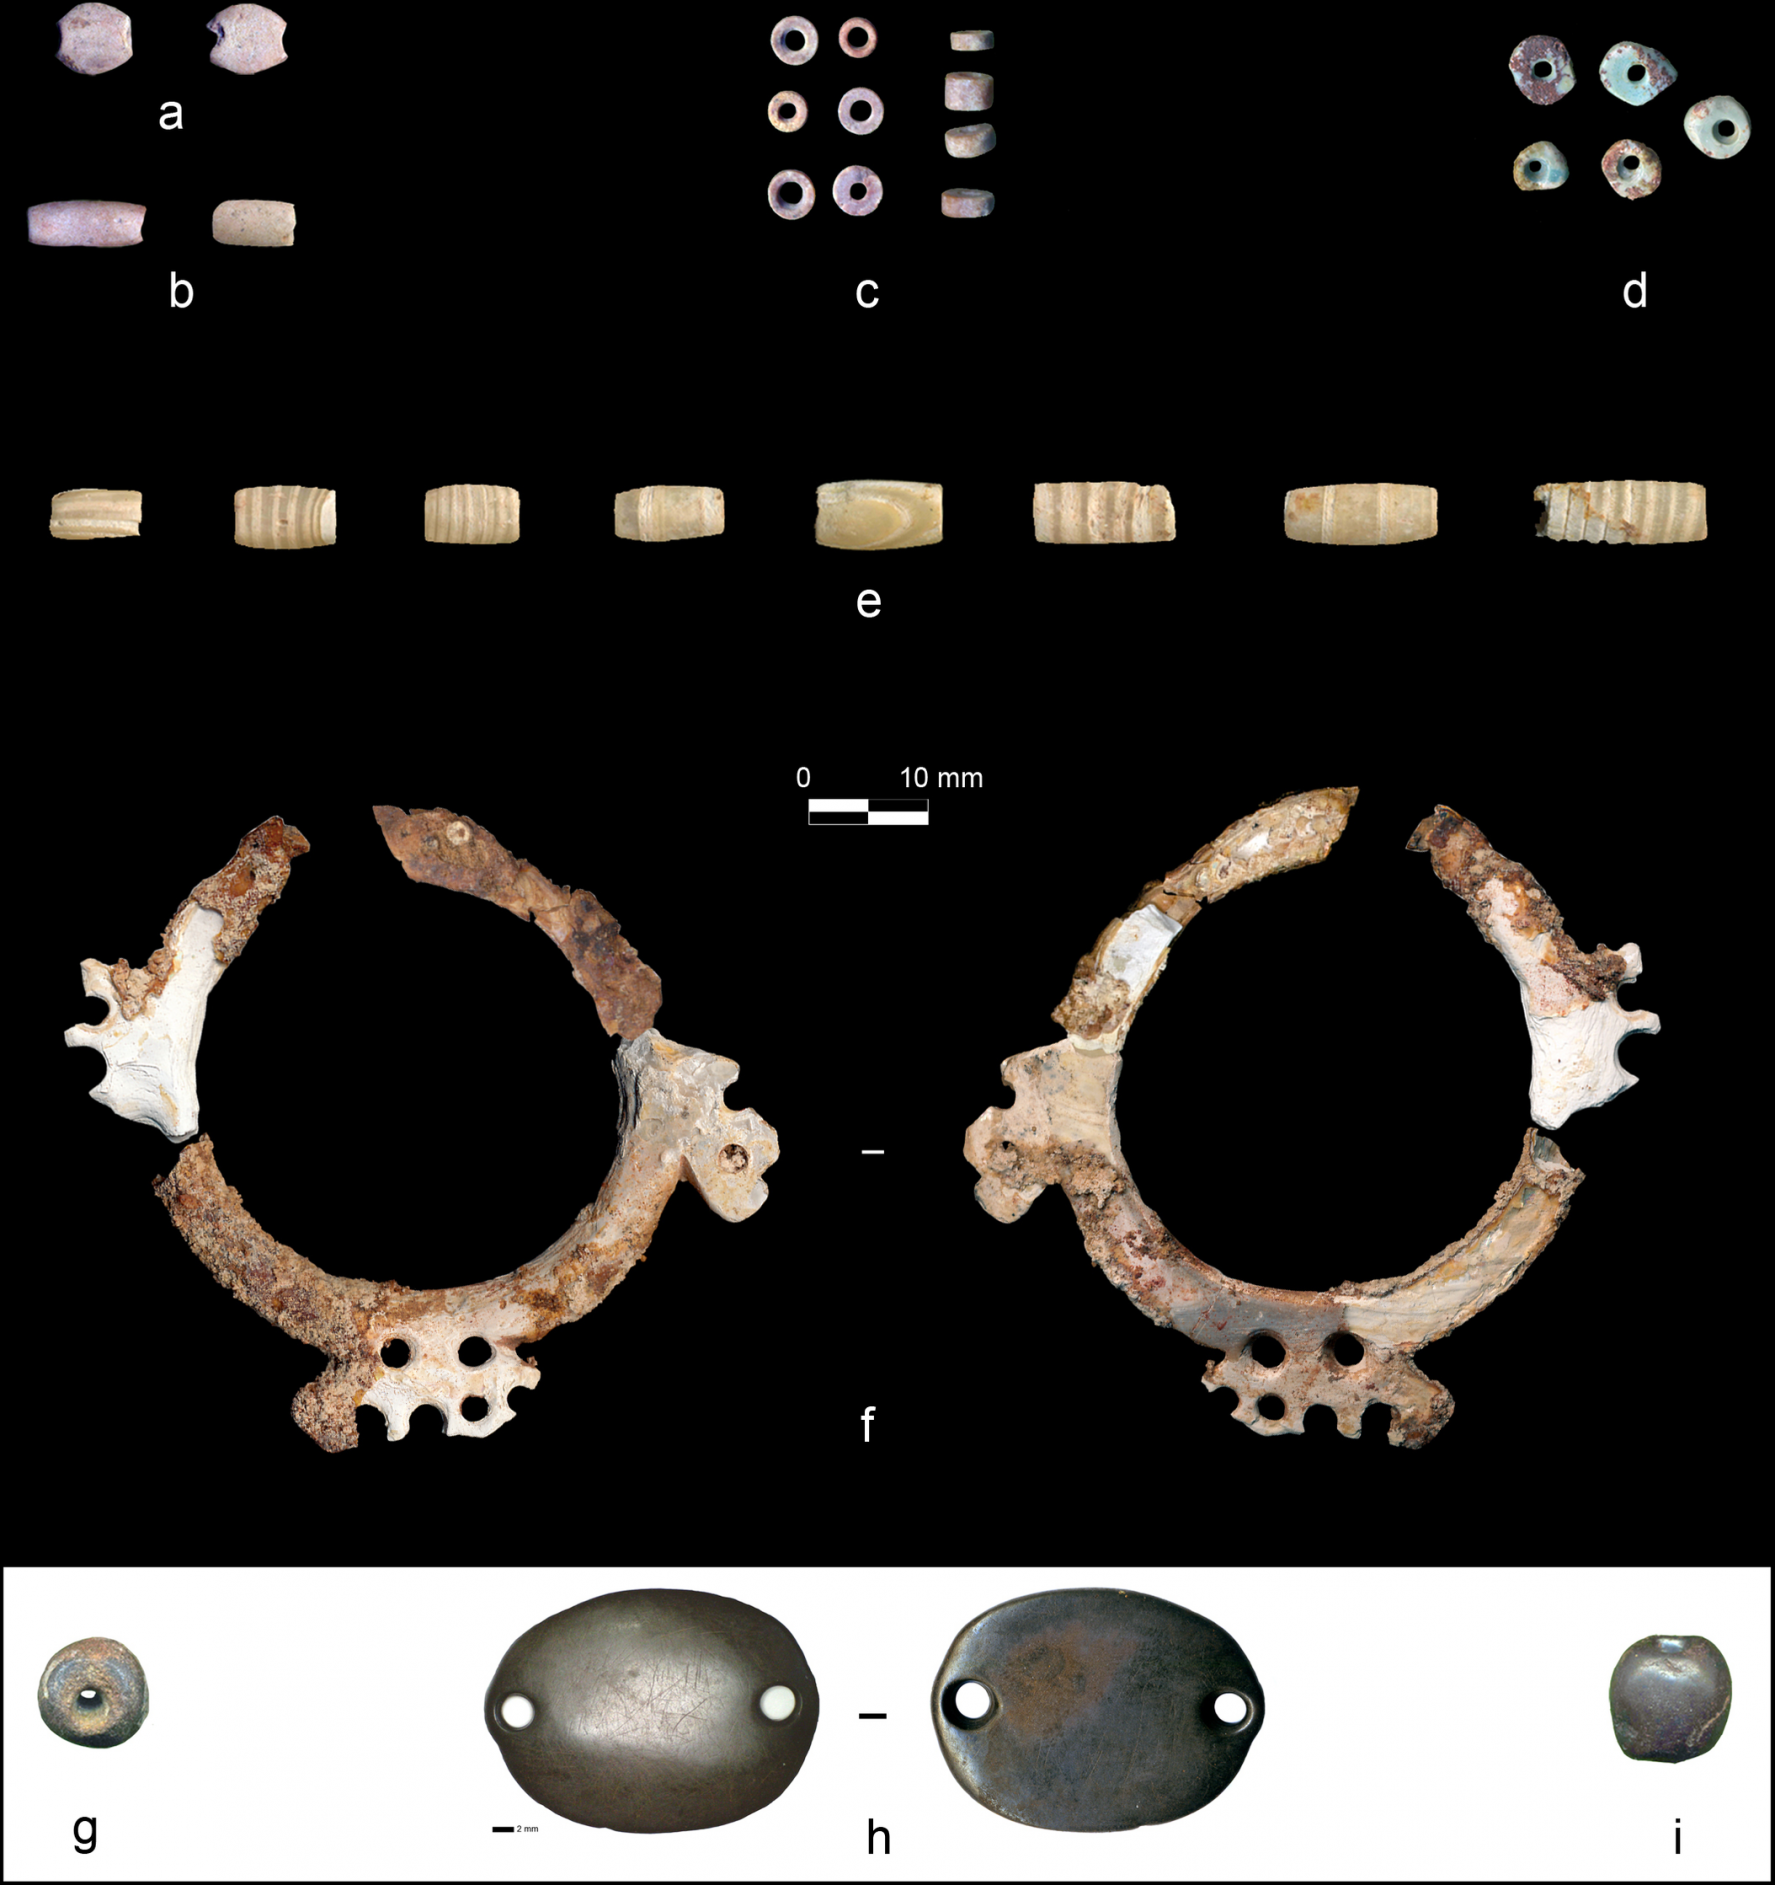 Különböző formájú és fajtájú gyöngyök kerültek elő a sírból.